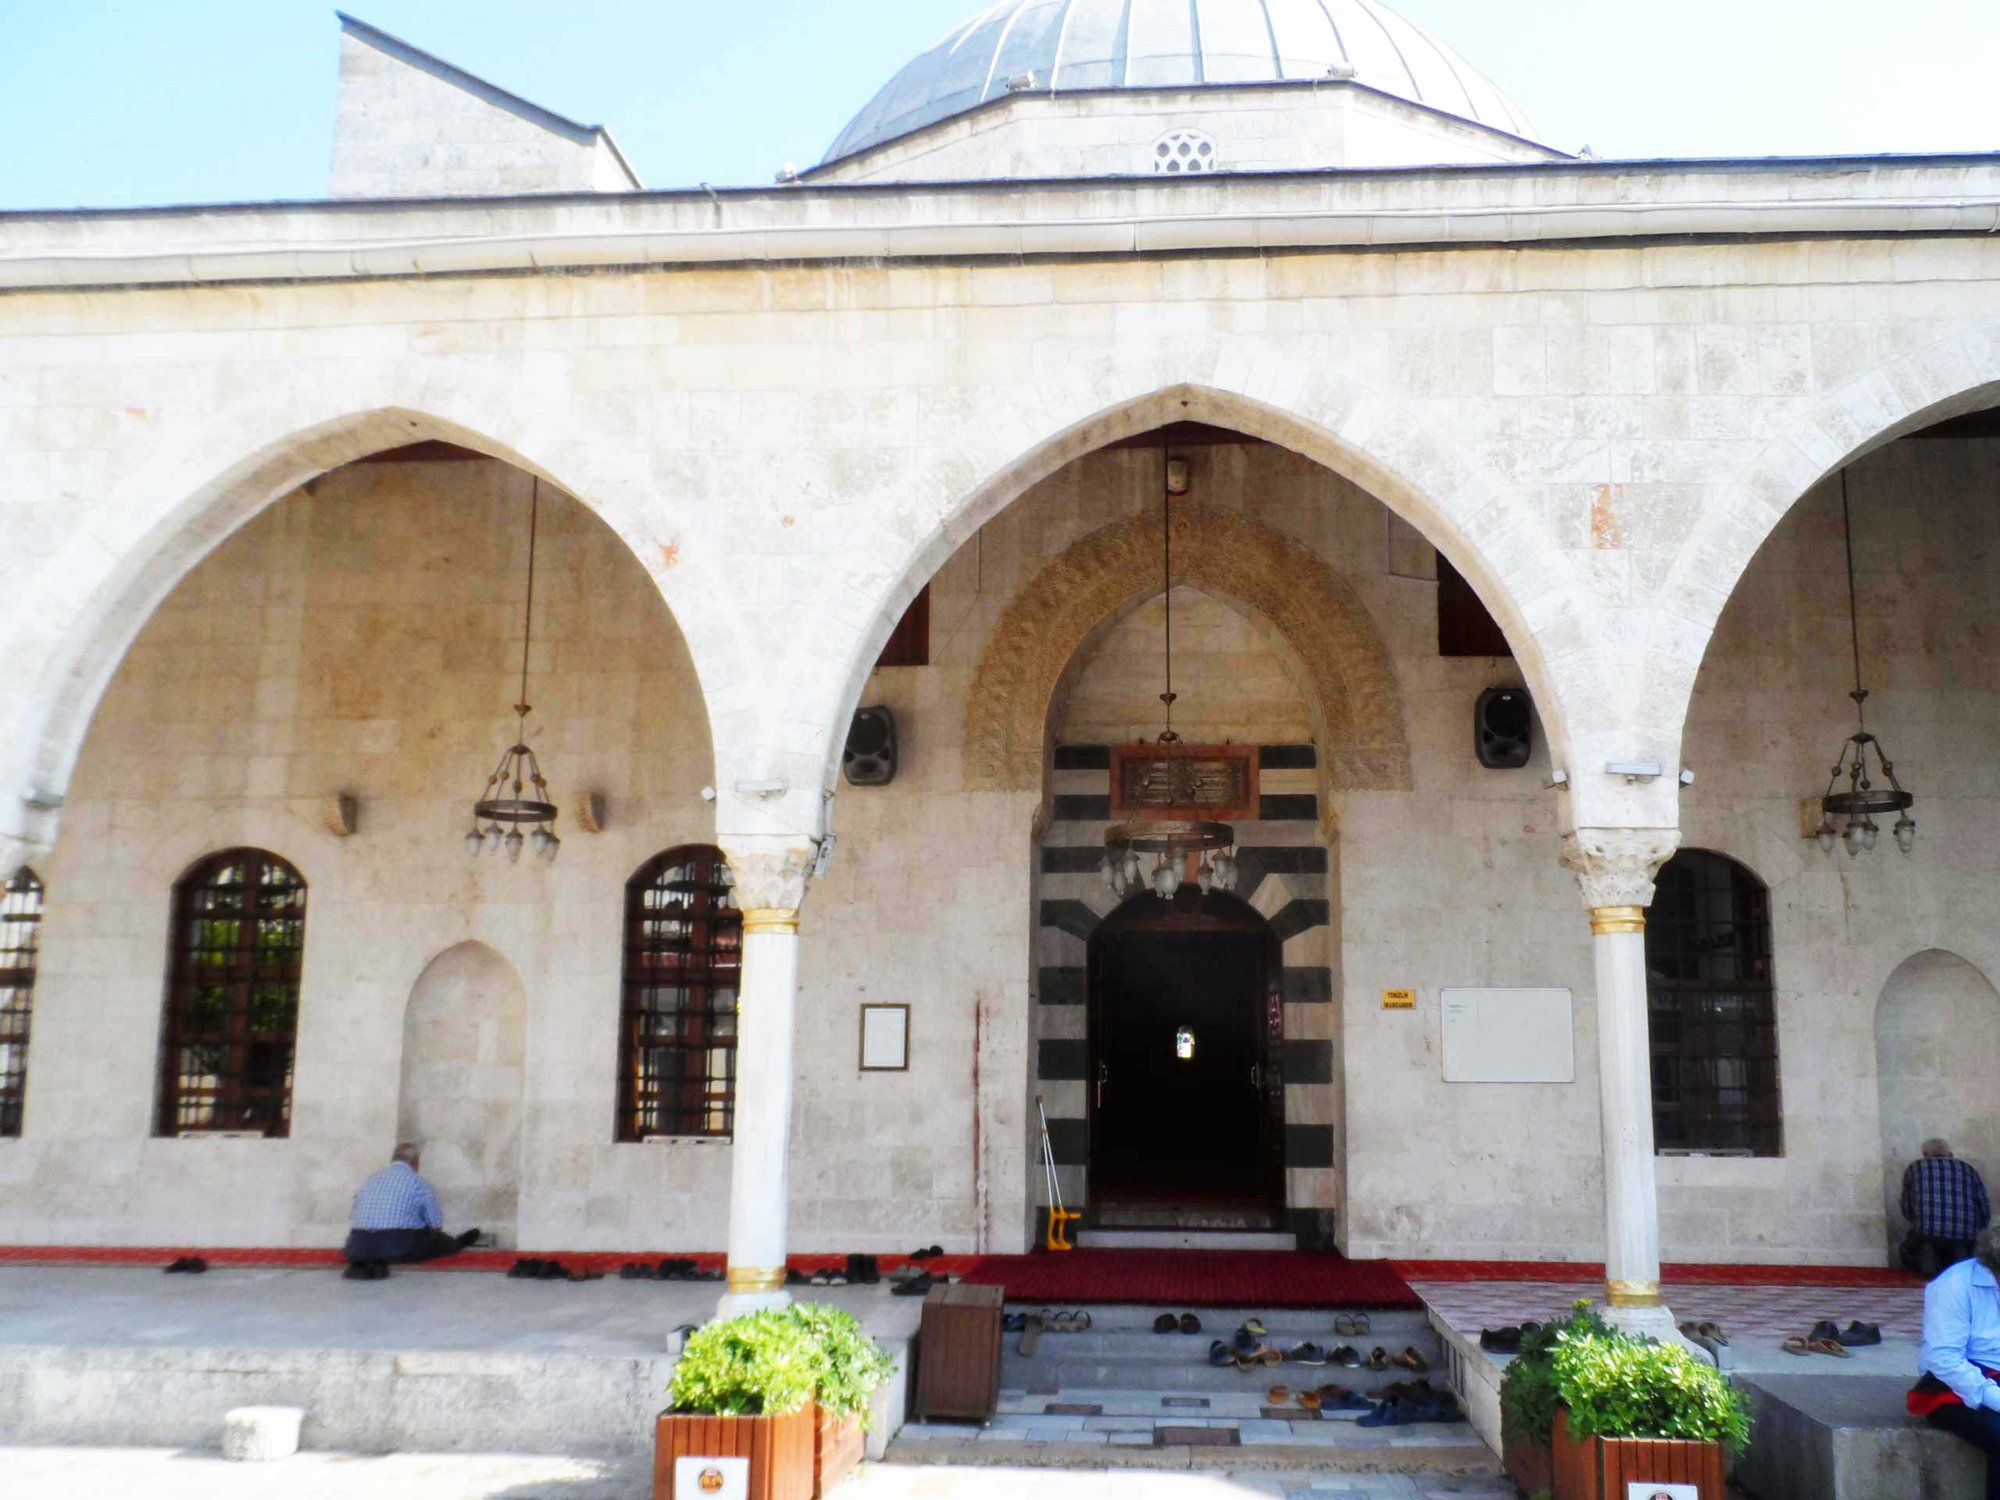 Khám phá nhà thờ Hồi giáo 1400 năm tuổi trước khi bị tàn phá bởi thảm họa động đất tại Thổ Nhĩ Kỳ  - Ảnh 4.